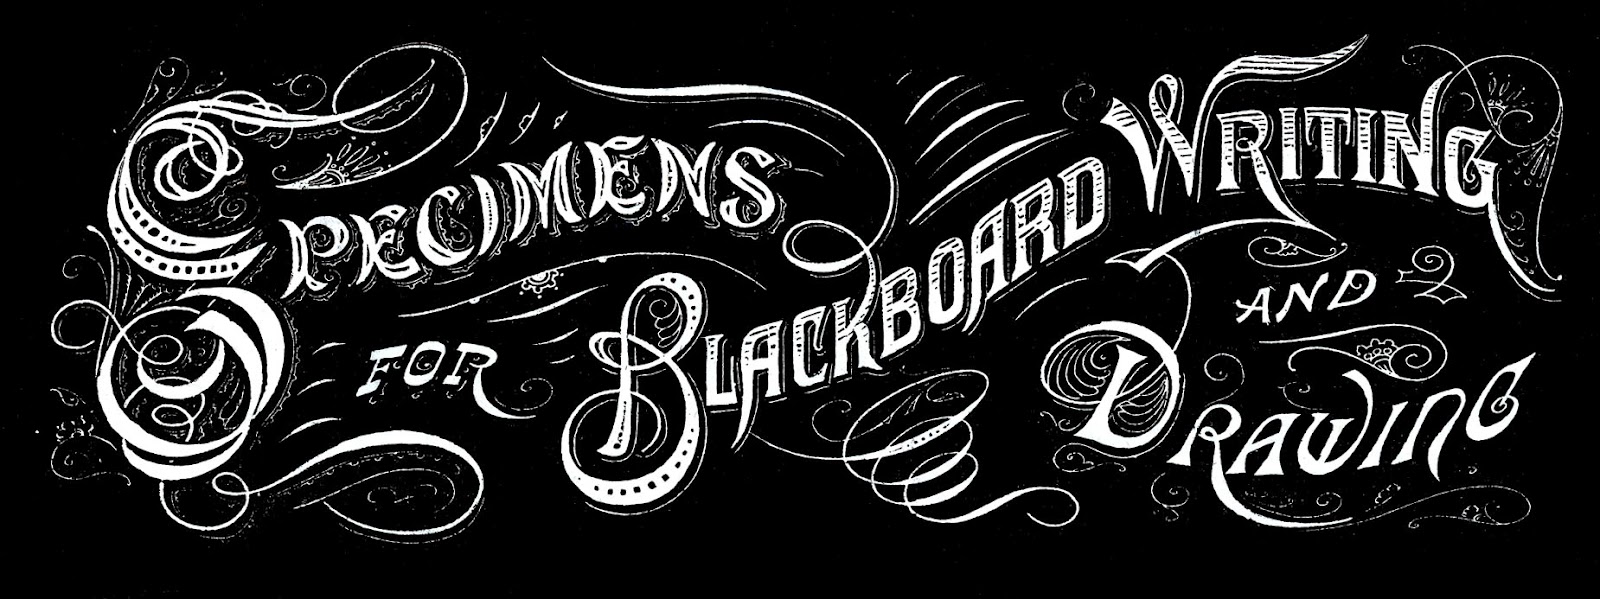 19 Vintage Font Chalkboard Images